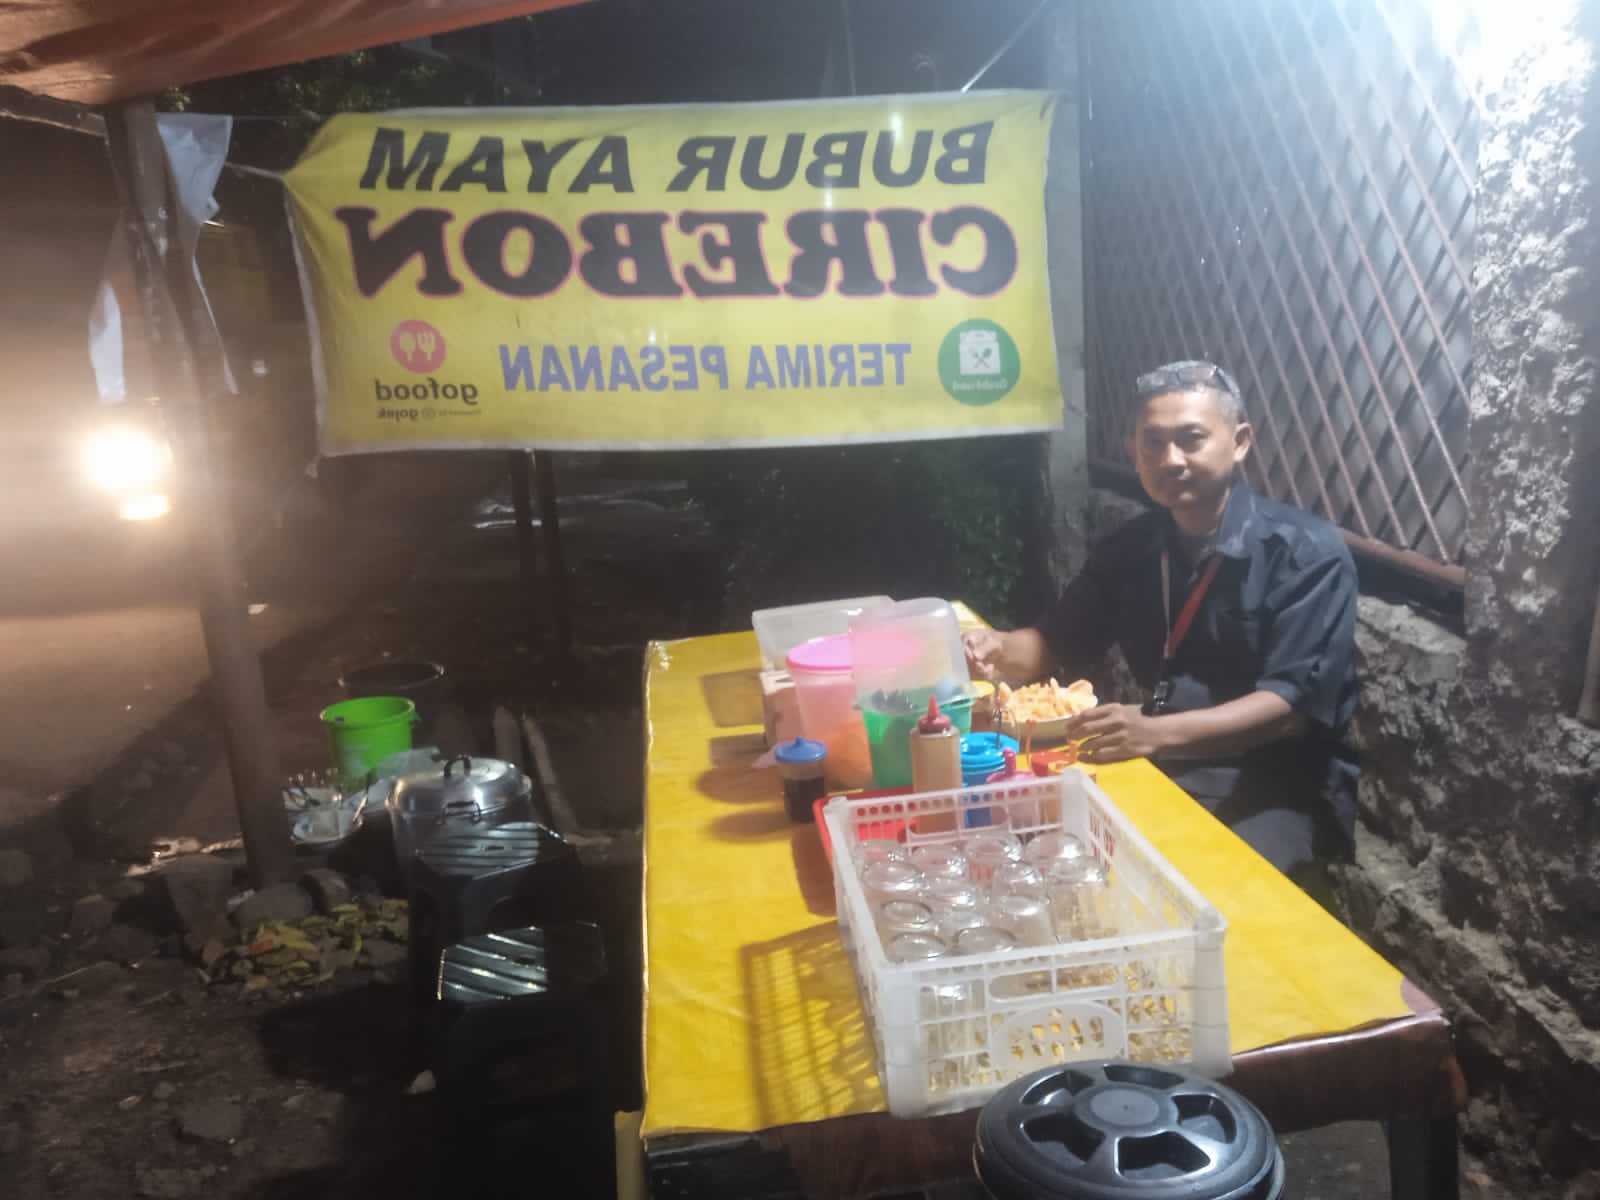 Virall..!! Icip - icip Kuliner Malam, Bubur Ayam Cirebon ala Bang Edy jadi Pilihan Rasa Makan Malam di Kawasan Jakarta Timur